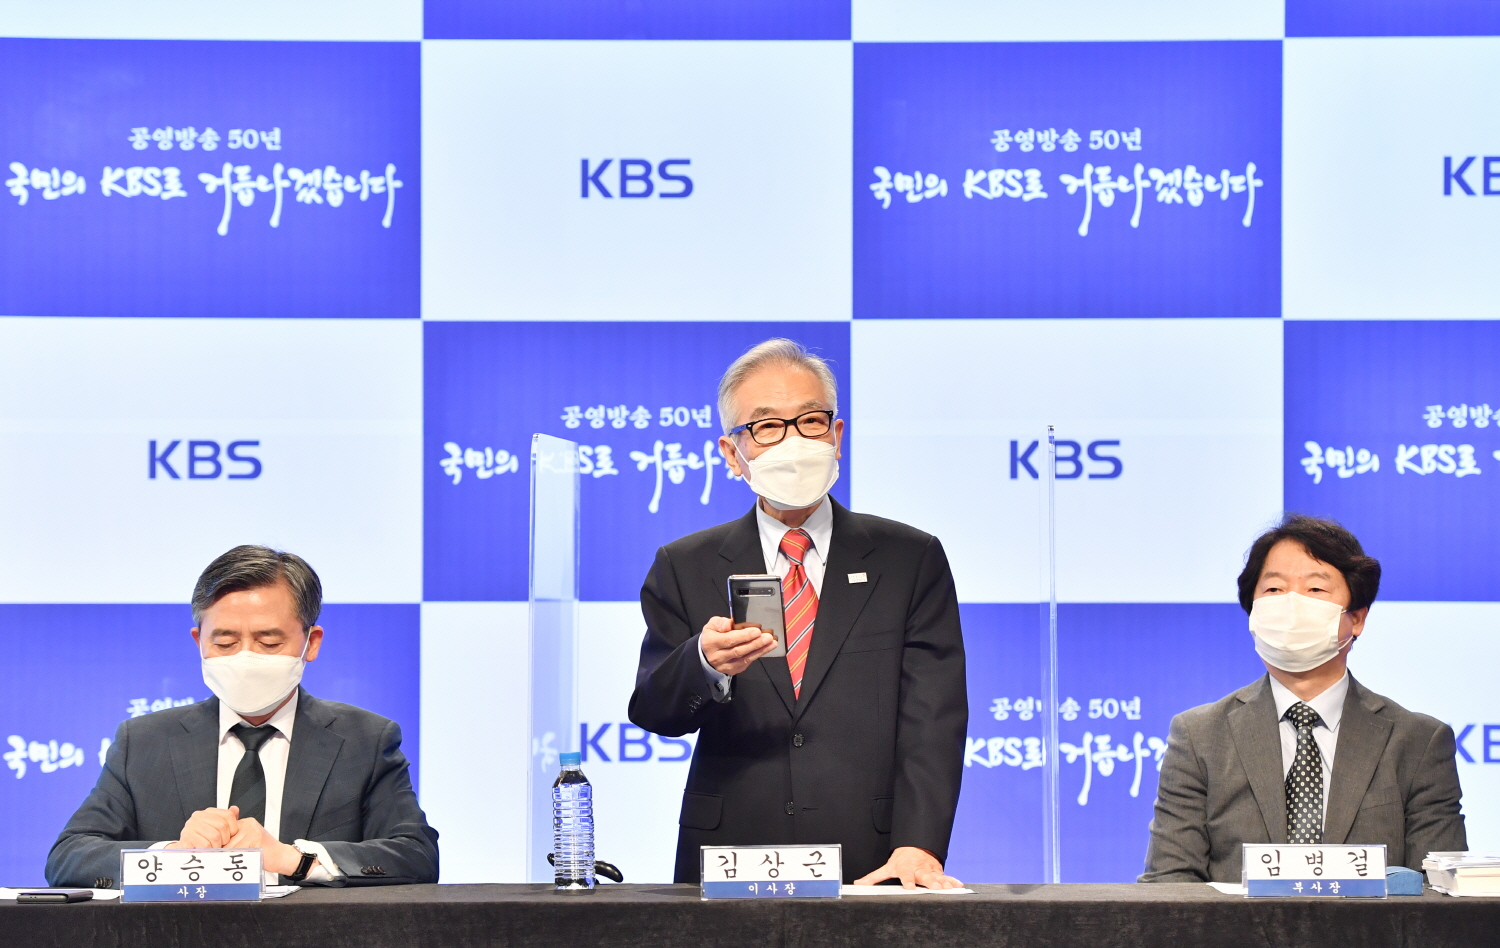 김상근(가운데) KBS 이사장이 수신료 조정안 의결 배경에 대해 설명하고 있다. 왼쪽은 양승동 사장, 오른쪽은 임병걸 부사장. KBS 제공